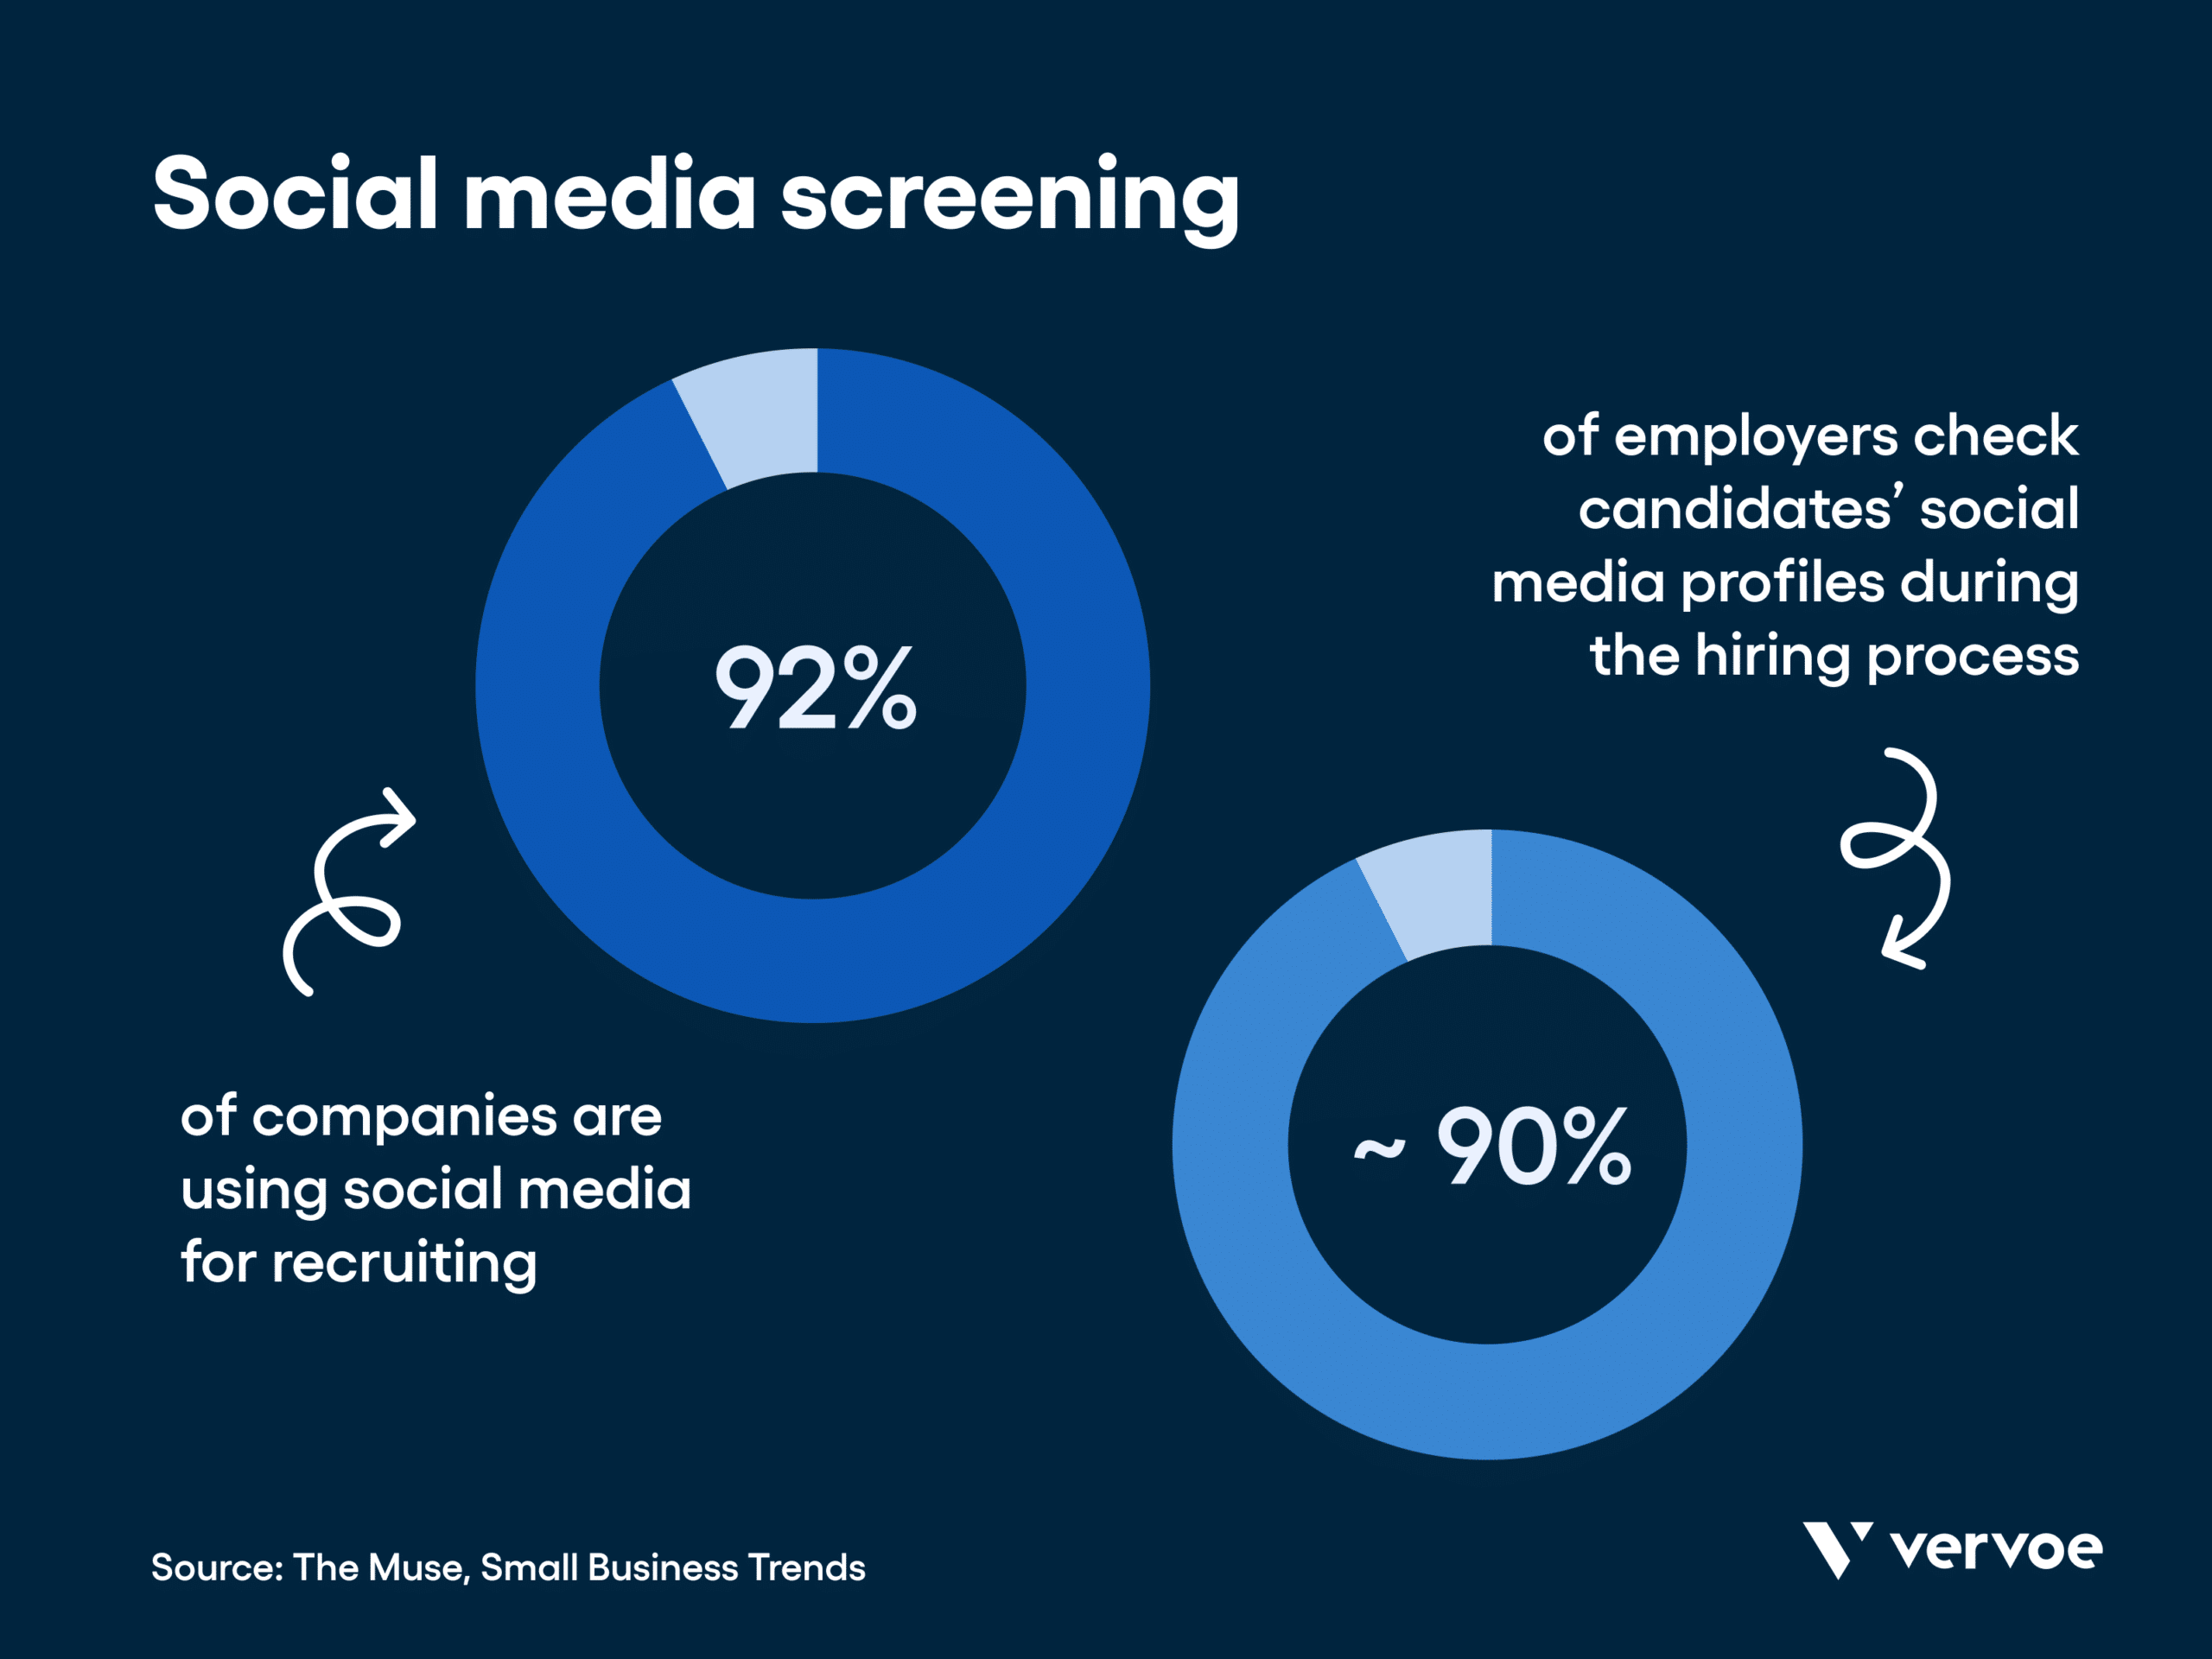 查看候选人的社交媒体并利用其进行招聘的公司比例